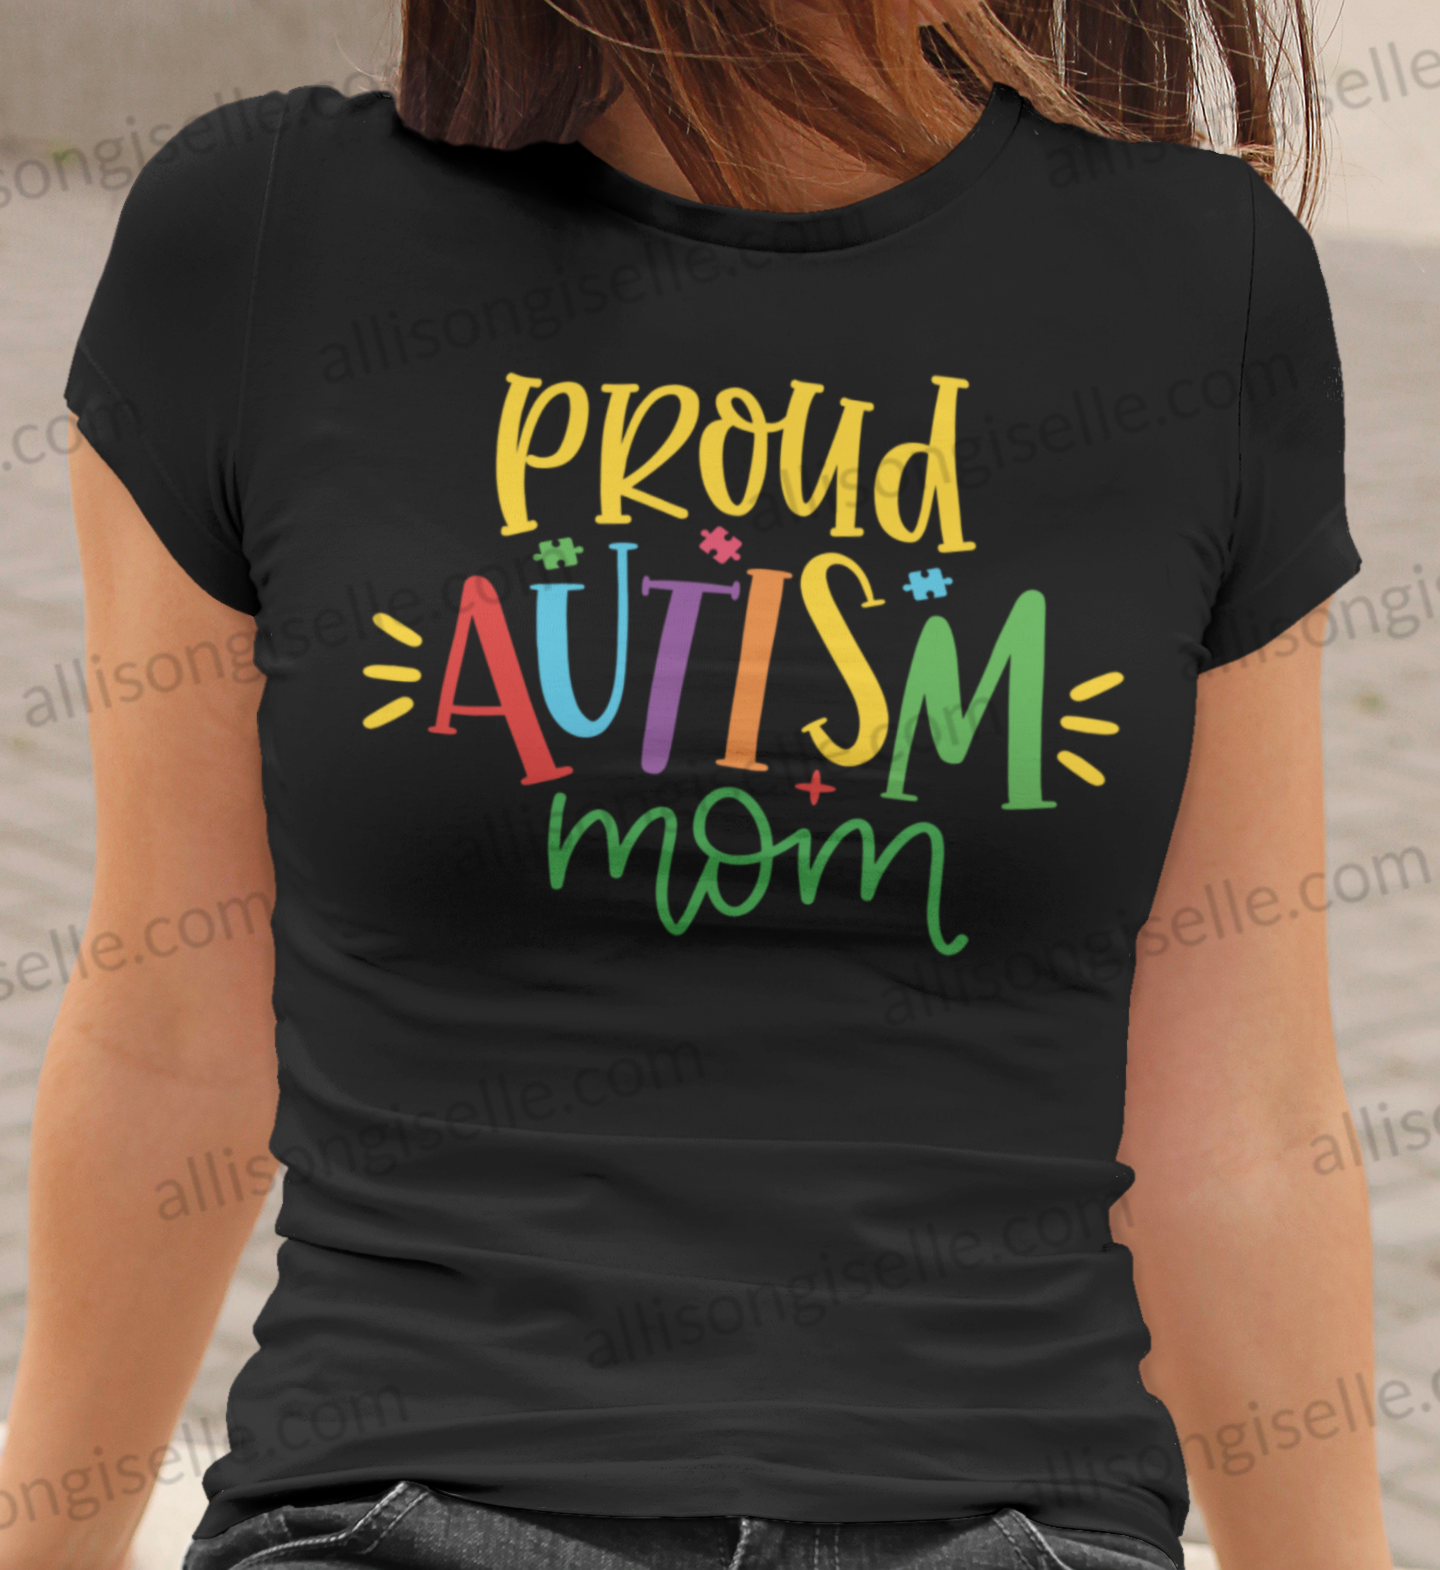 Proud Autism Mom Shirt, Adult Autism Awareness shirts, Autism Shirt Adult, Adult Autism Shirt, Autism Awareness Shirt Adult